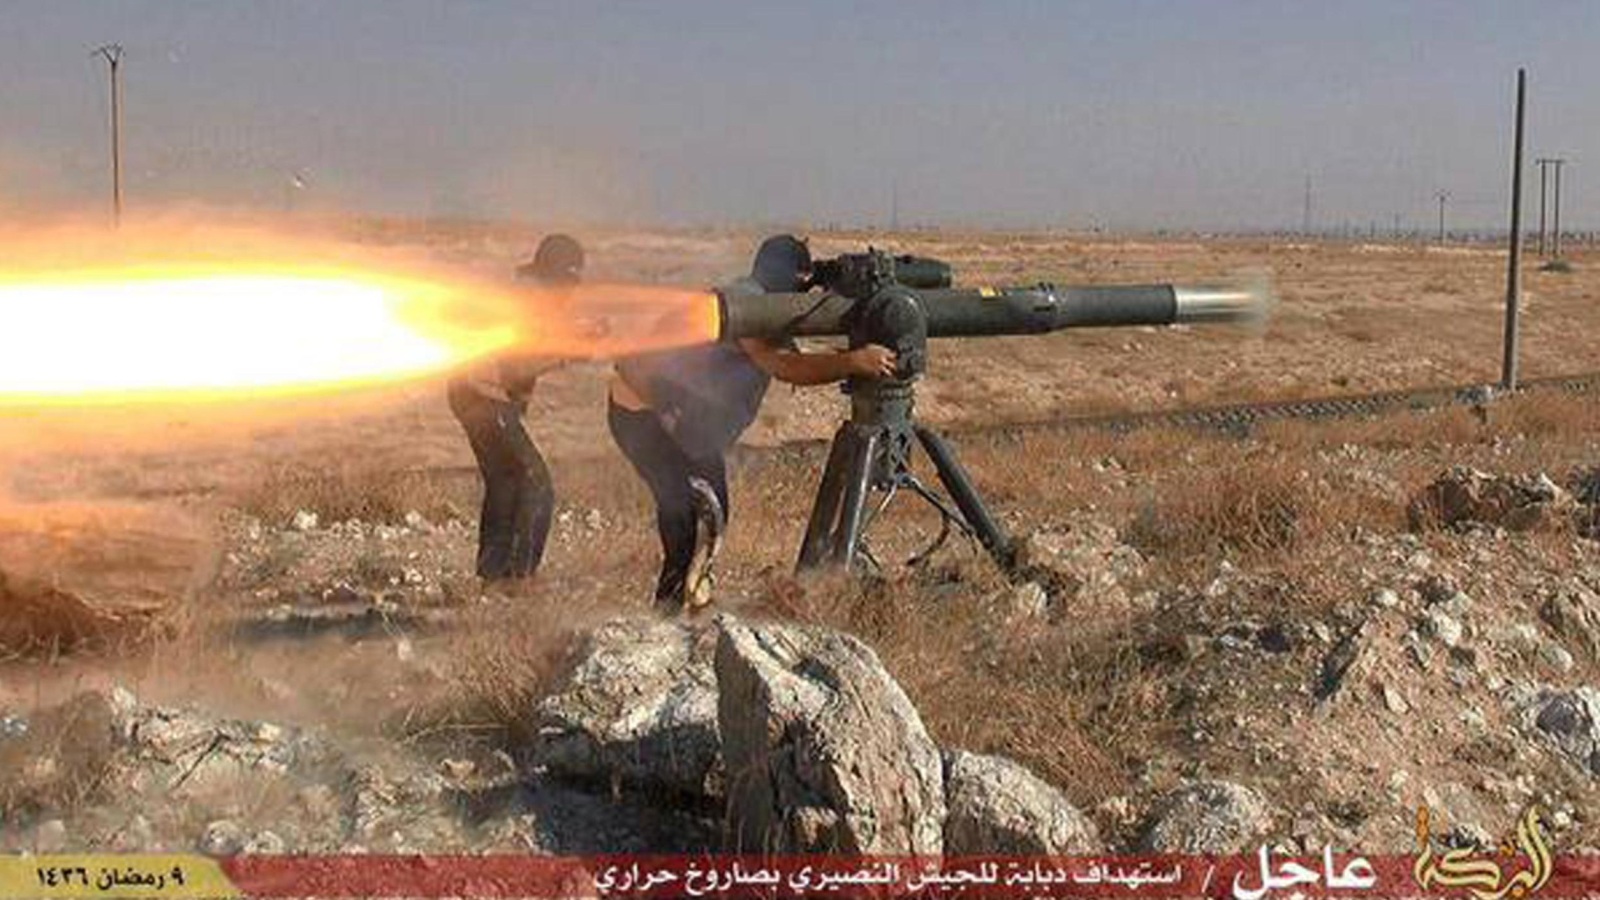 صورة نشرها تنظيم الدولة لاستهداف آلية لجيش النظام السوري بصاروخ موجه (أسوشيتد برس)